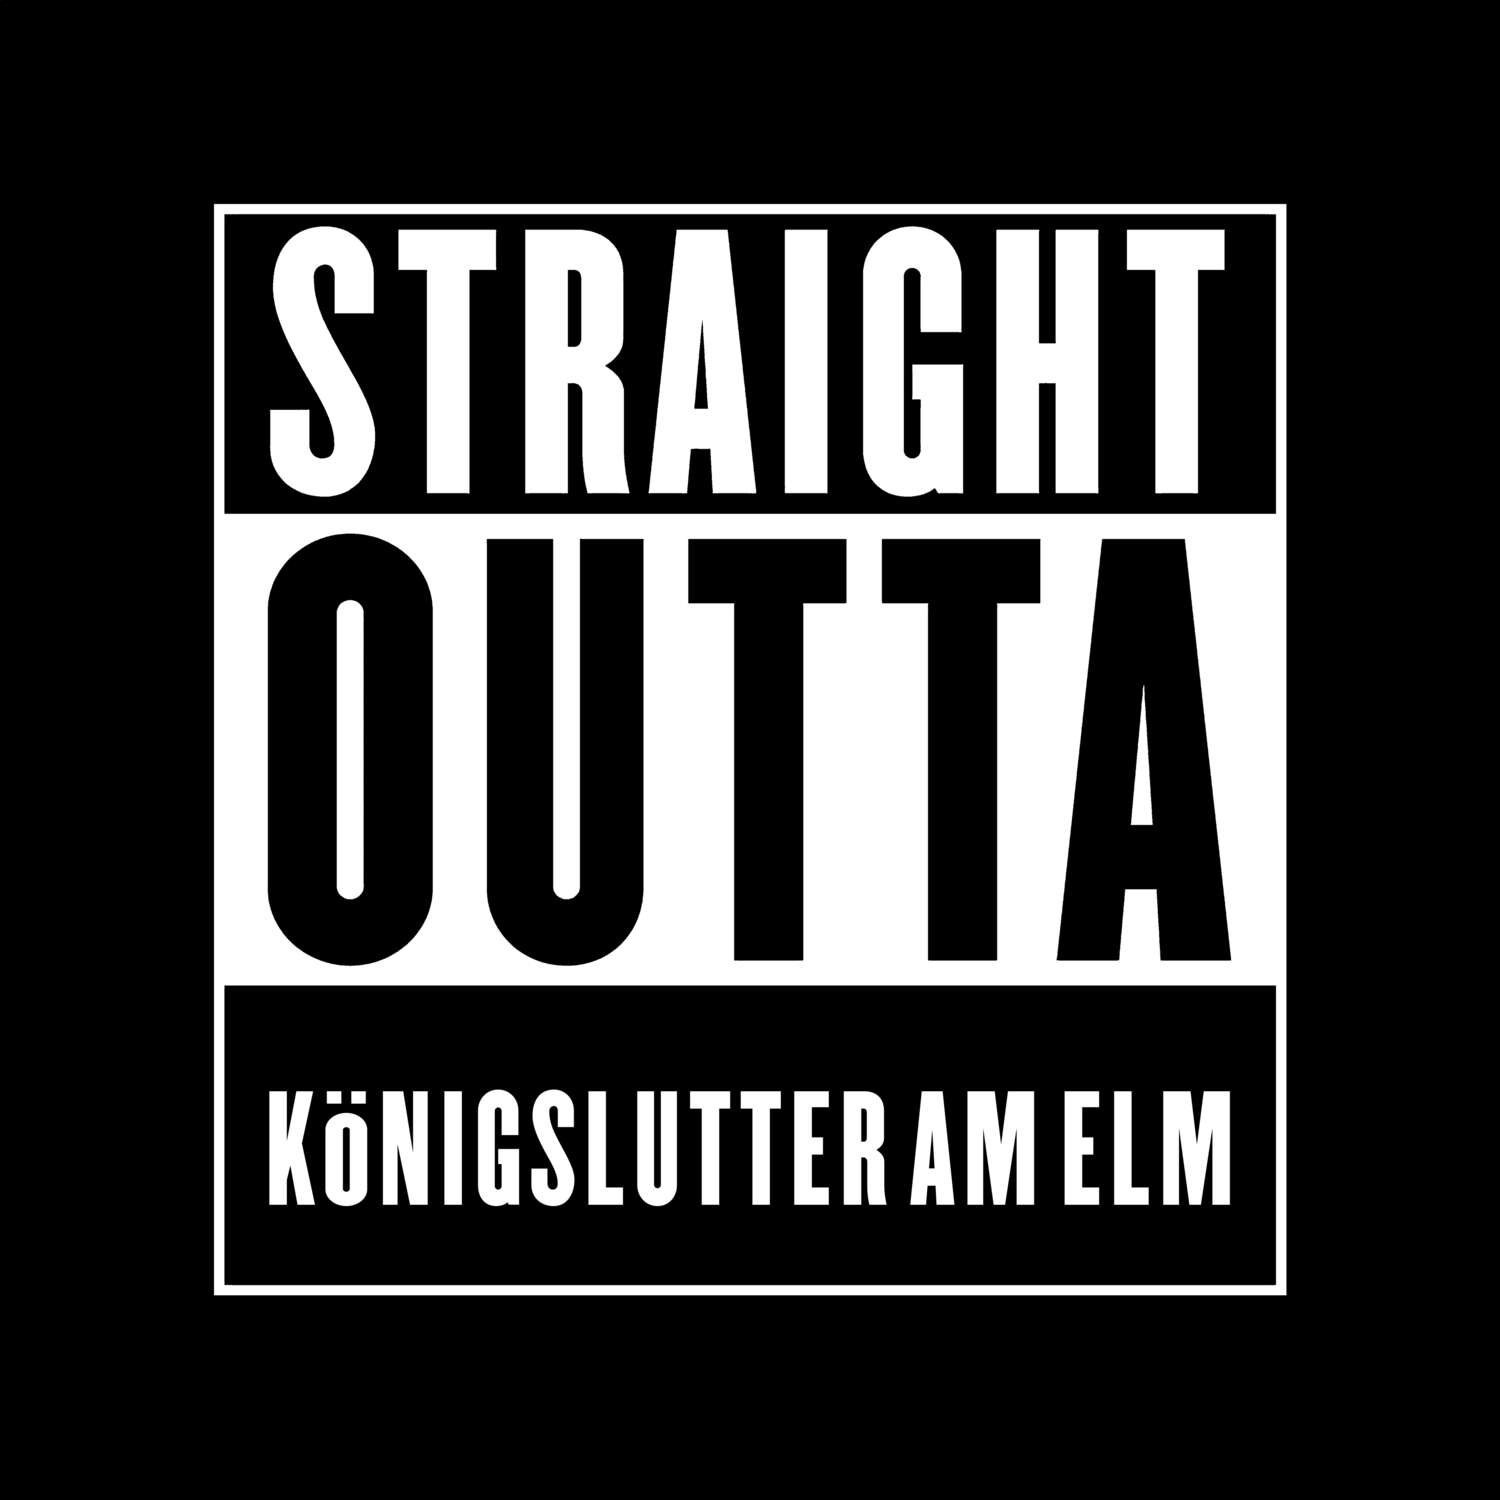 Königslutter am Elm T-Shirt »Straight Outta«